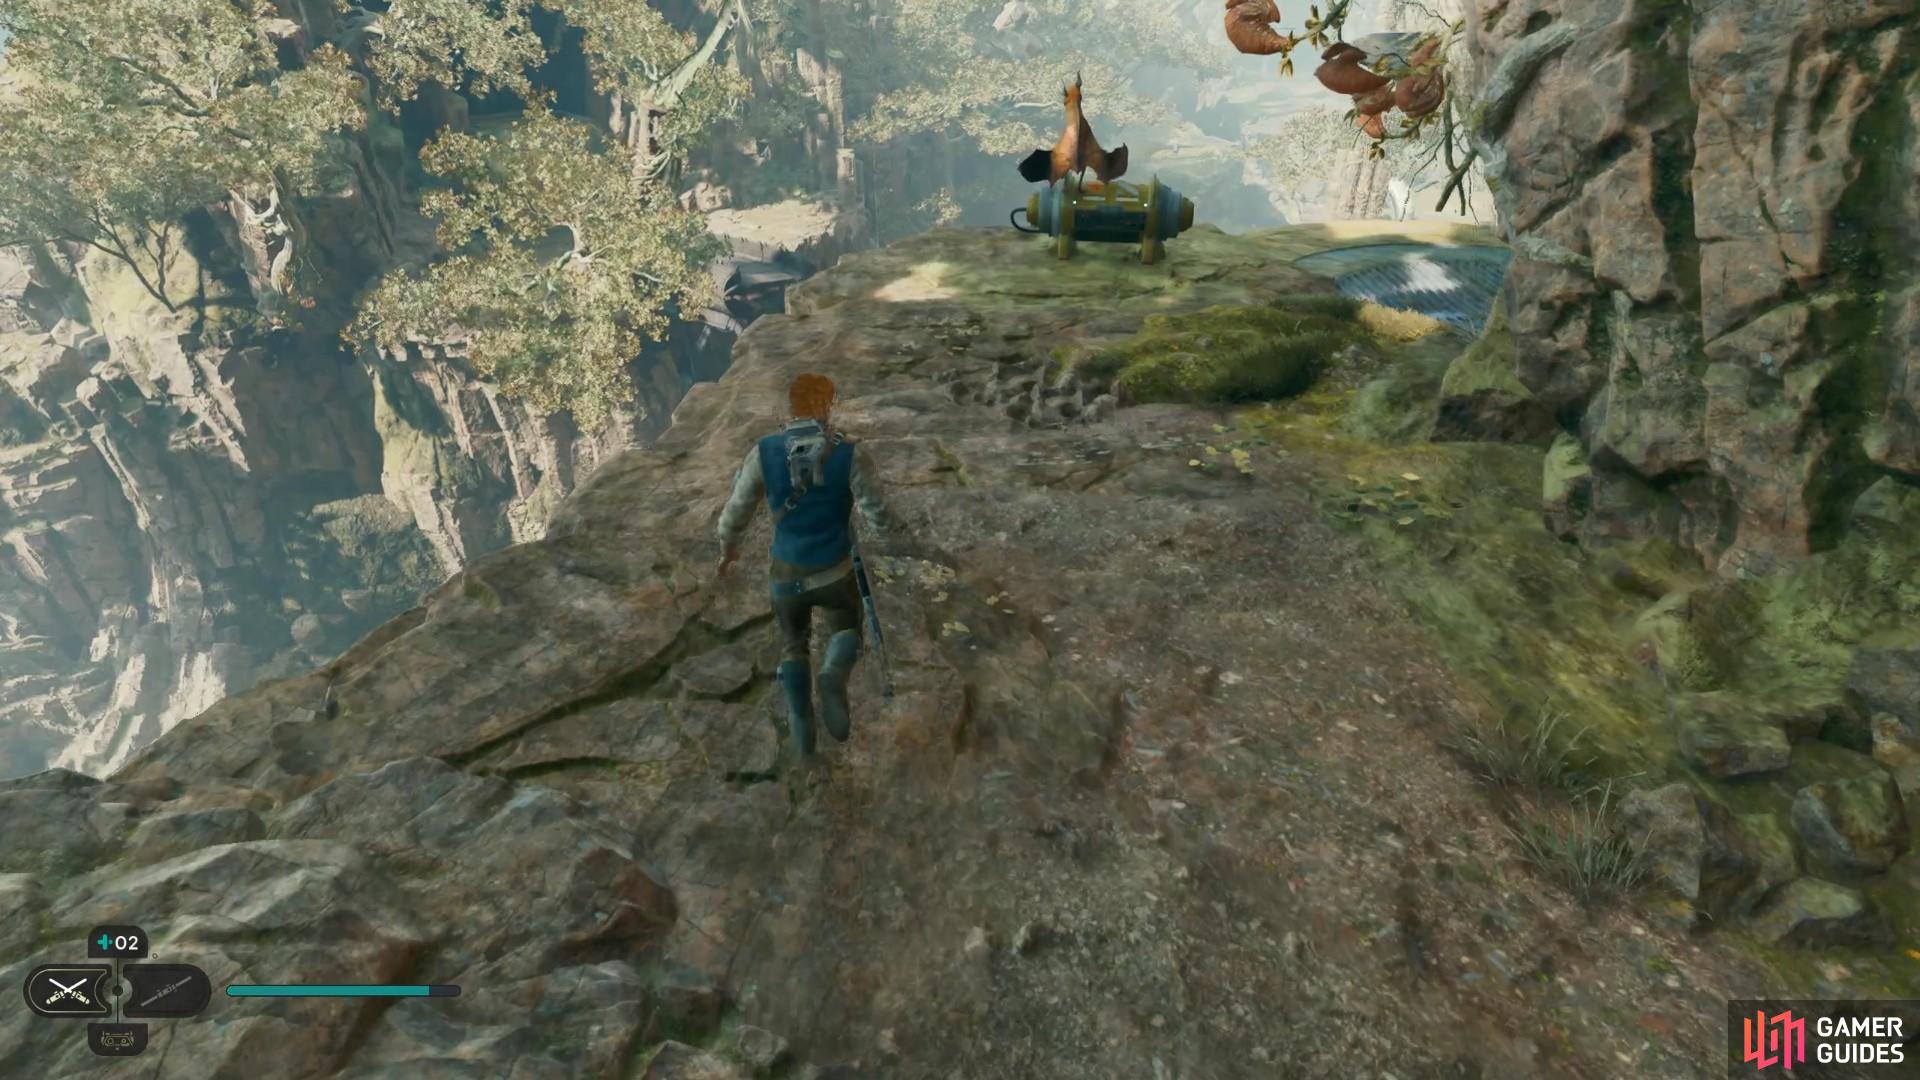 Follow a hidden cliffside near a Mogu in the Basalt Forest to find a Stim Upgrade Location in Jedi Survivor.